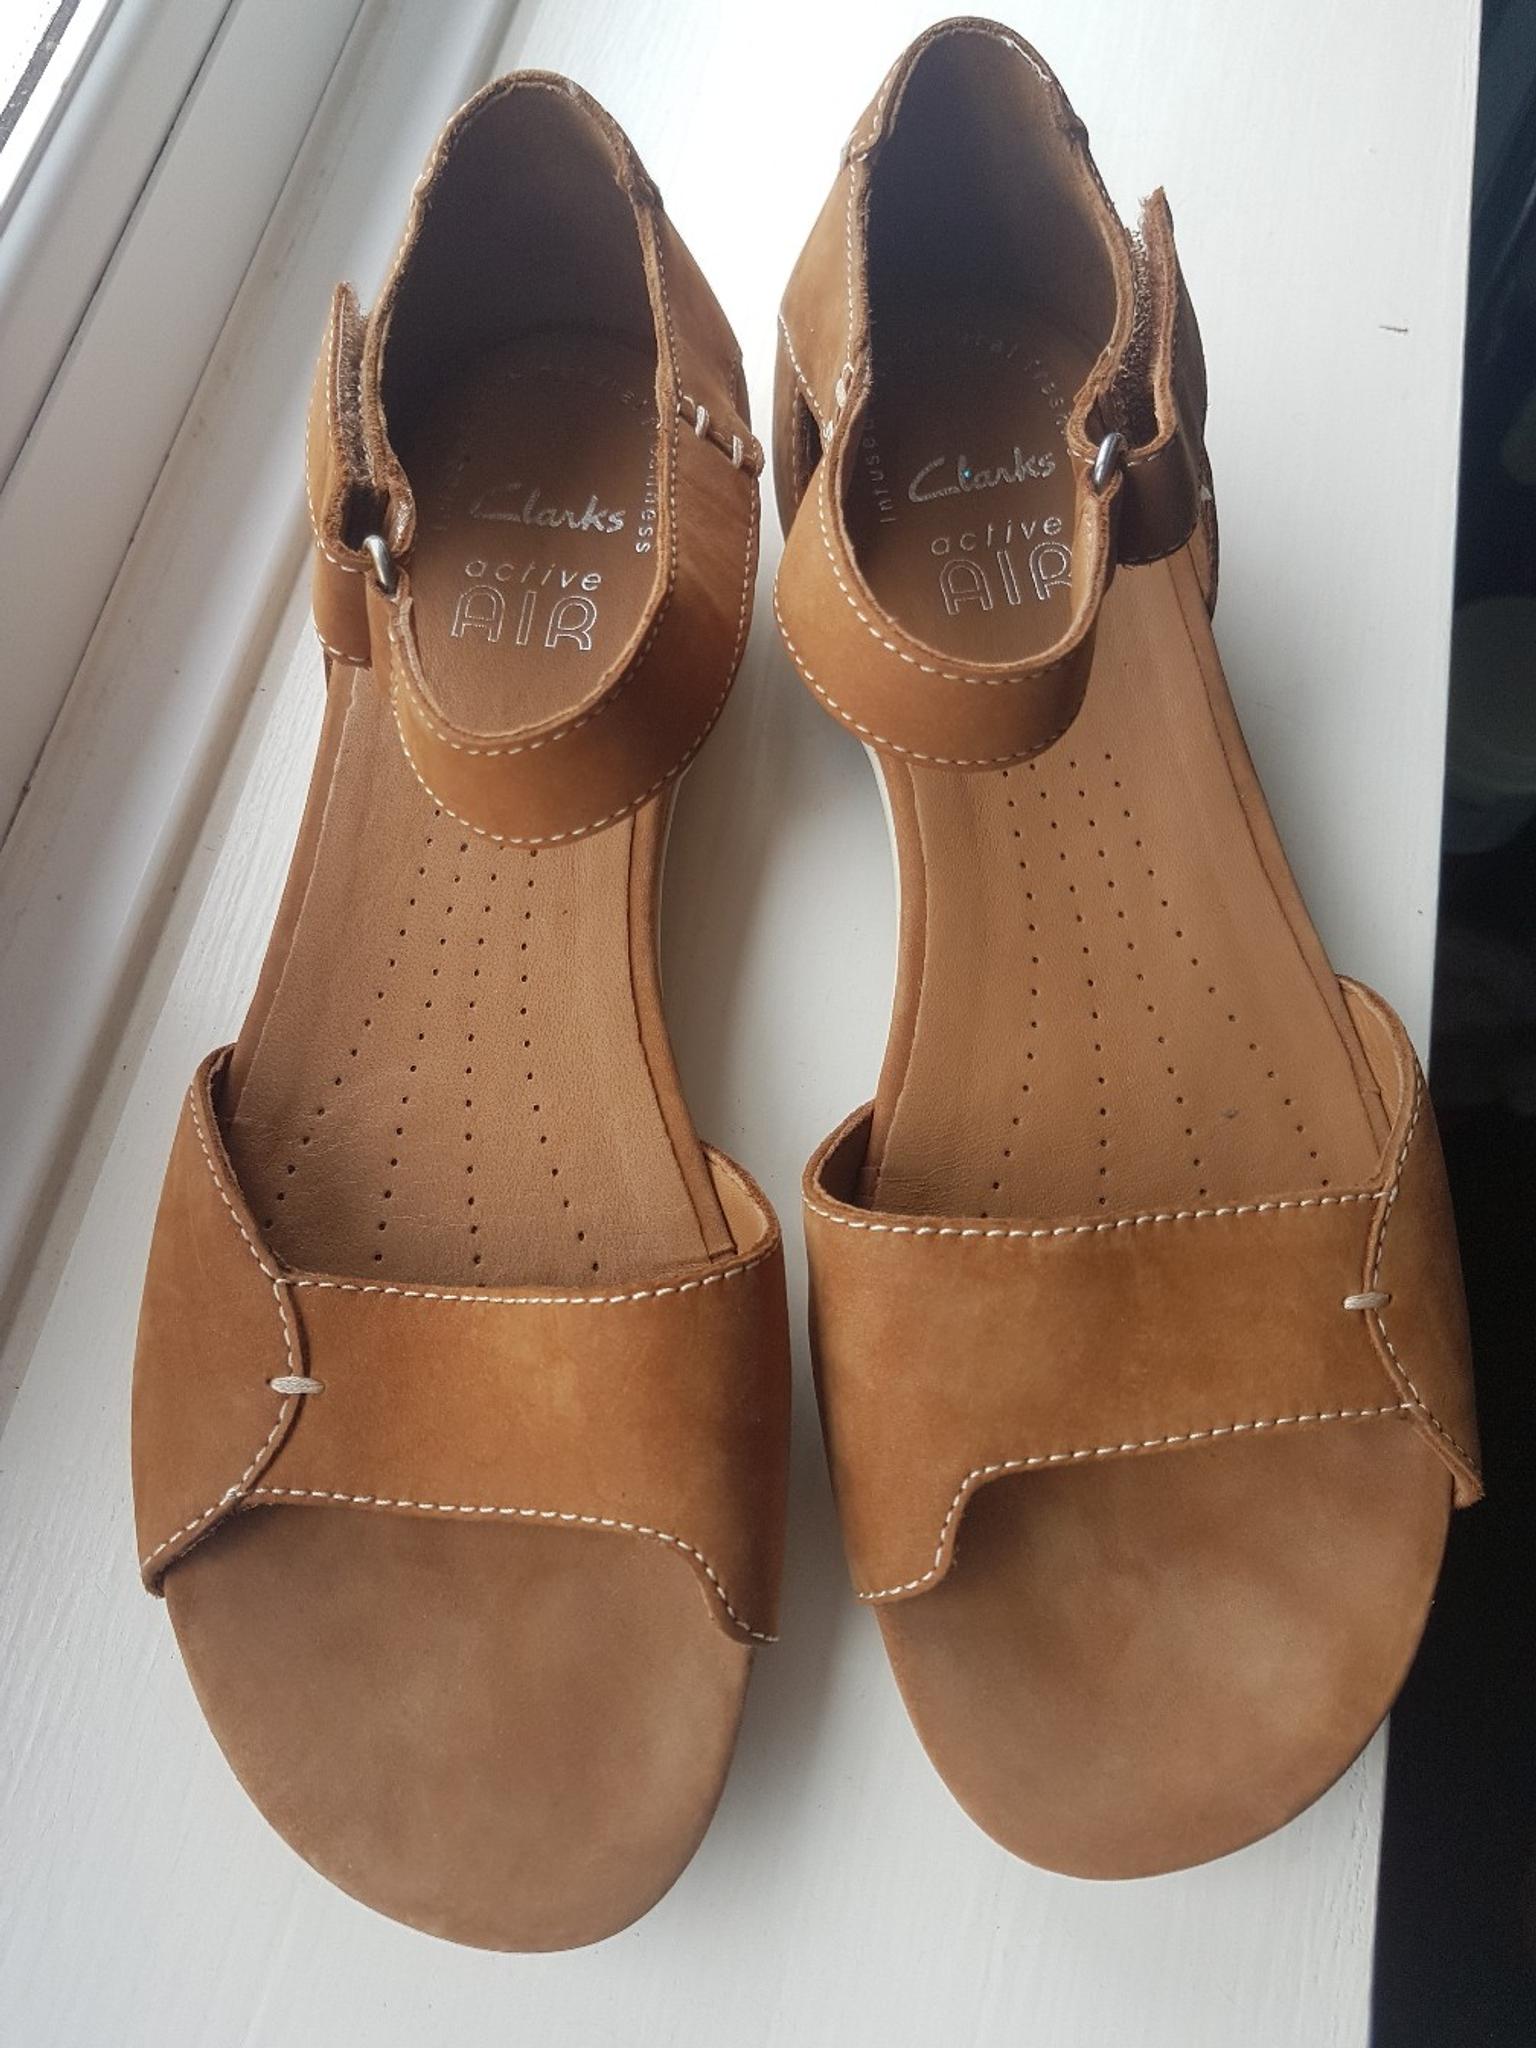 womens tan sandals uk